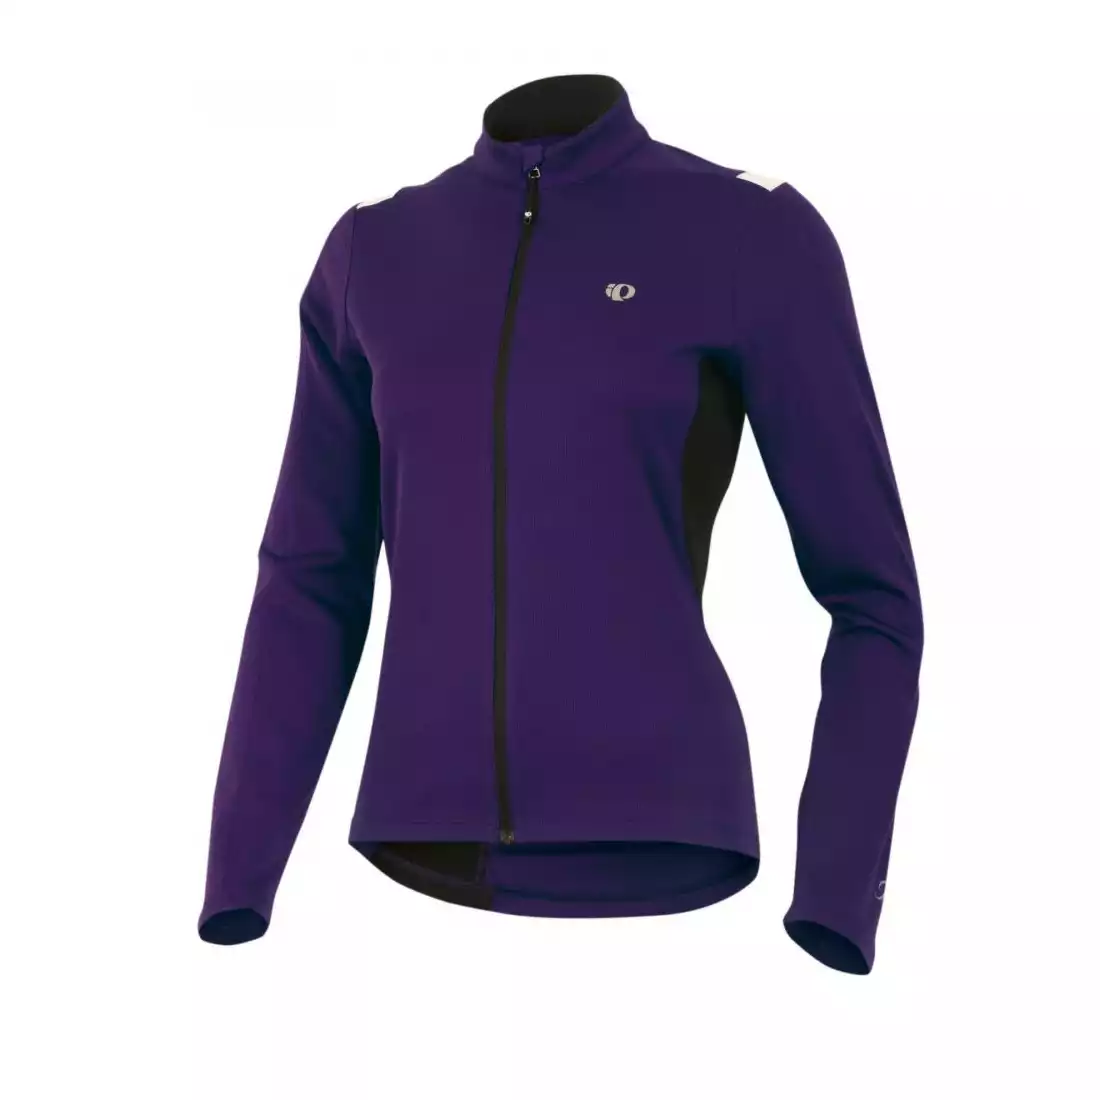 PEARL IZUMI - W's Sugar Thermal Jersey 11221235-3ZW - damska bluza rowerowa, kolor: Fioletowy